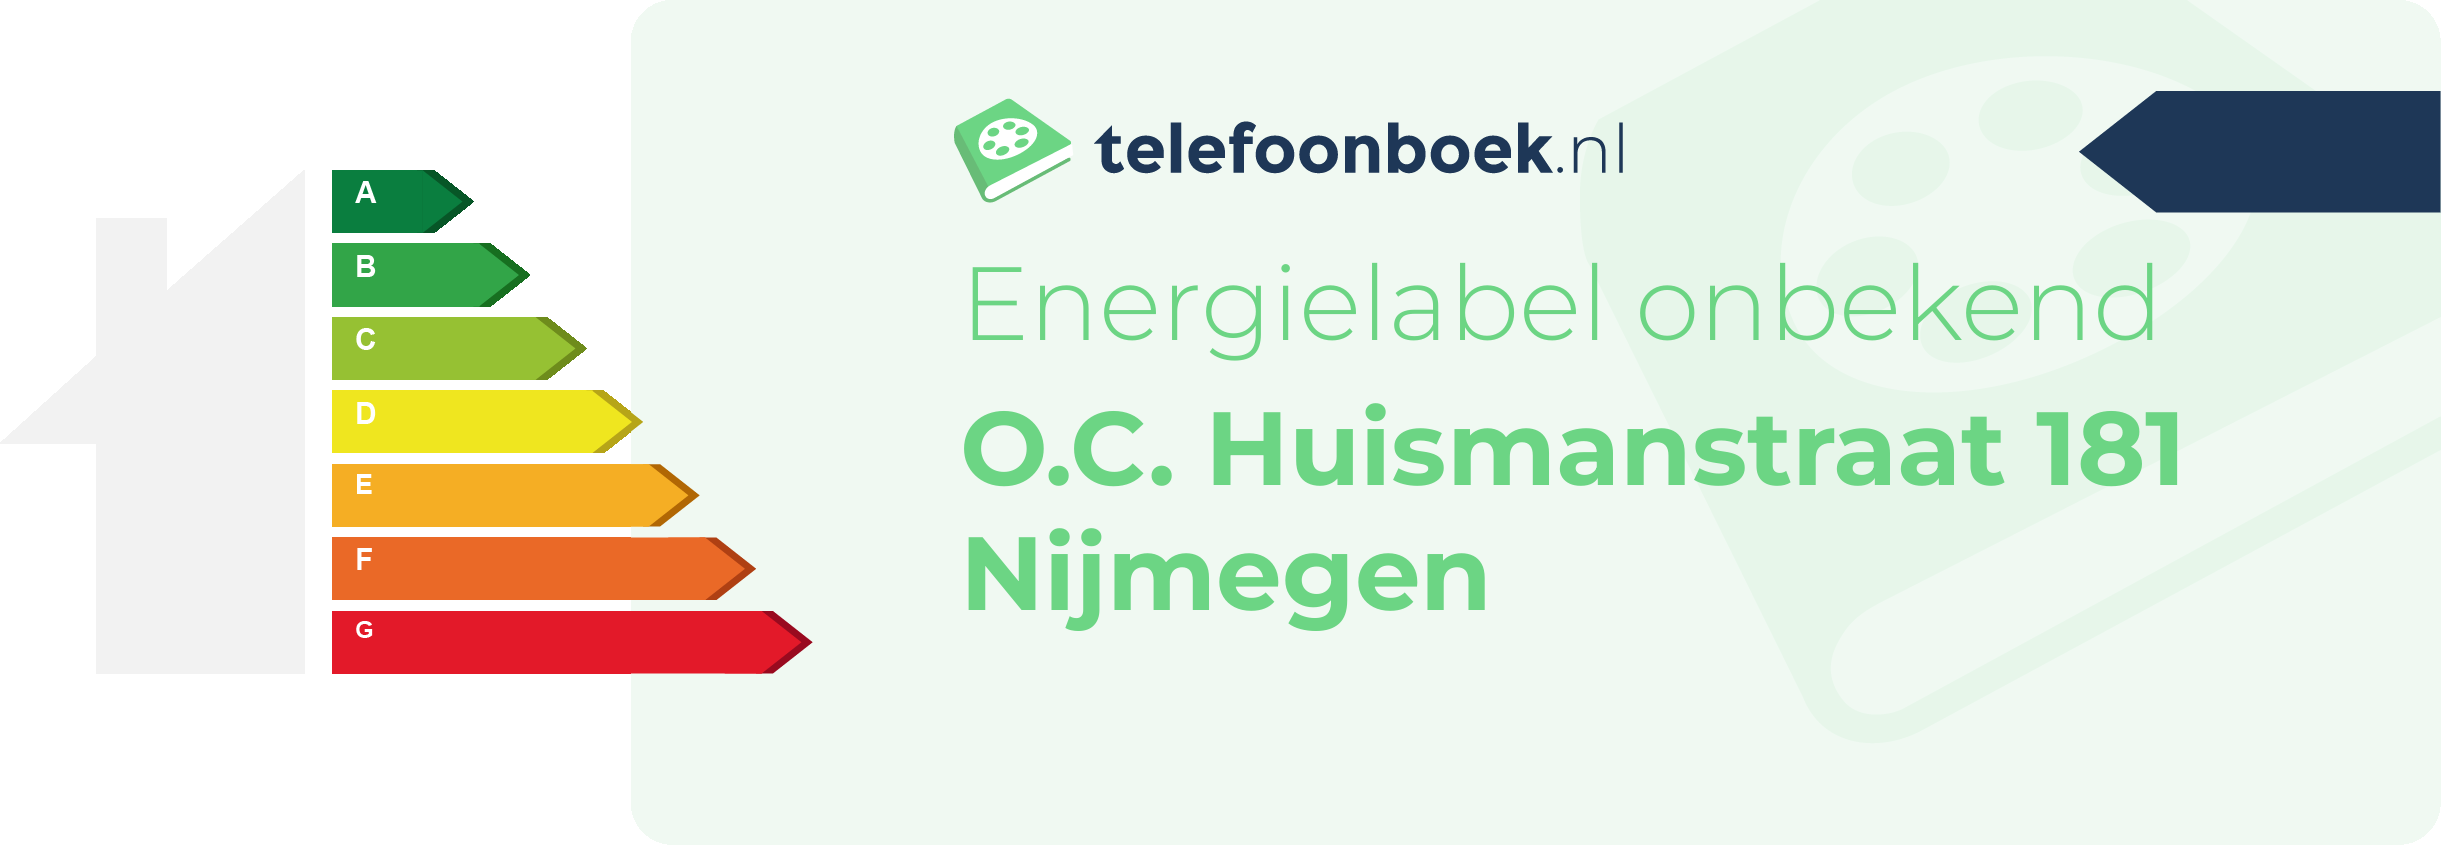 Energielabel O.C. Huismanstraat 181 Nijmegen